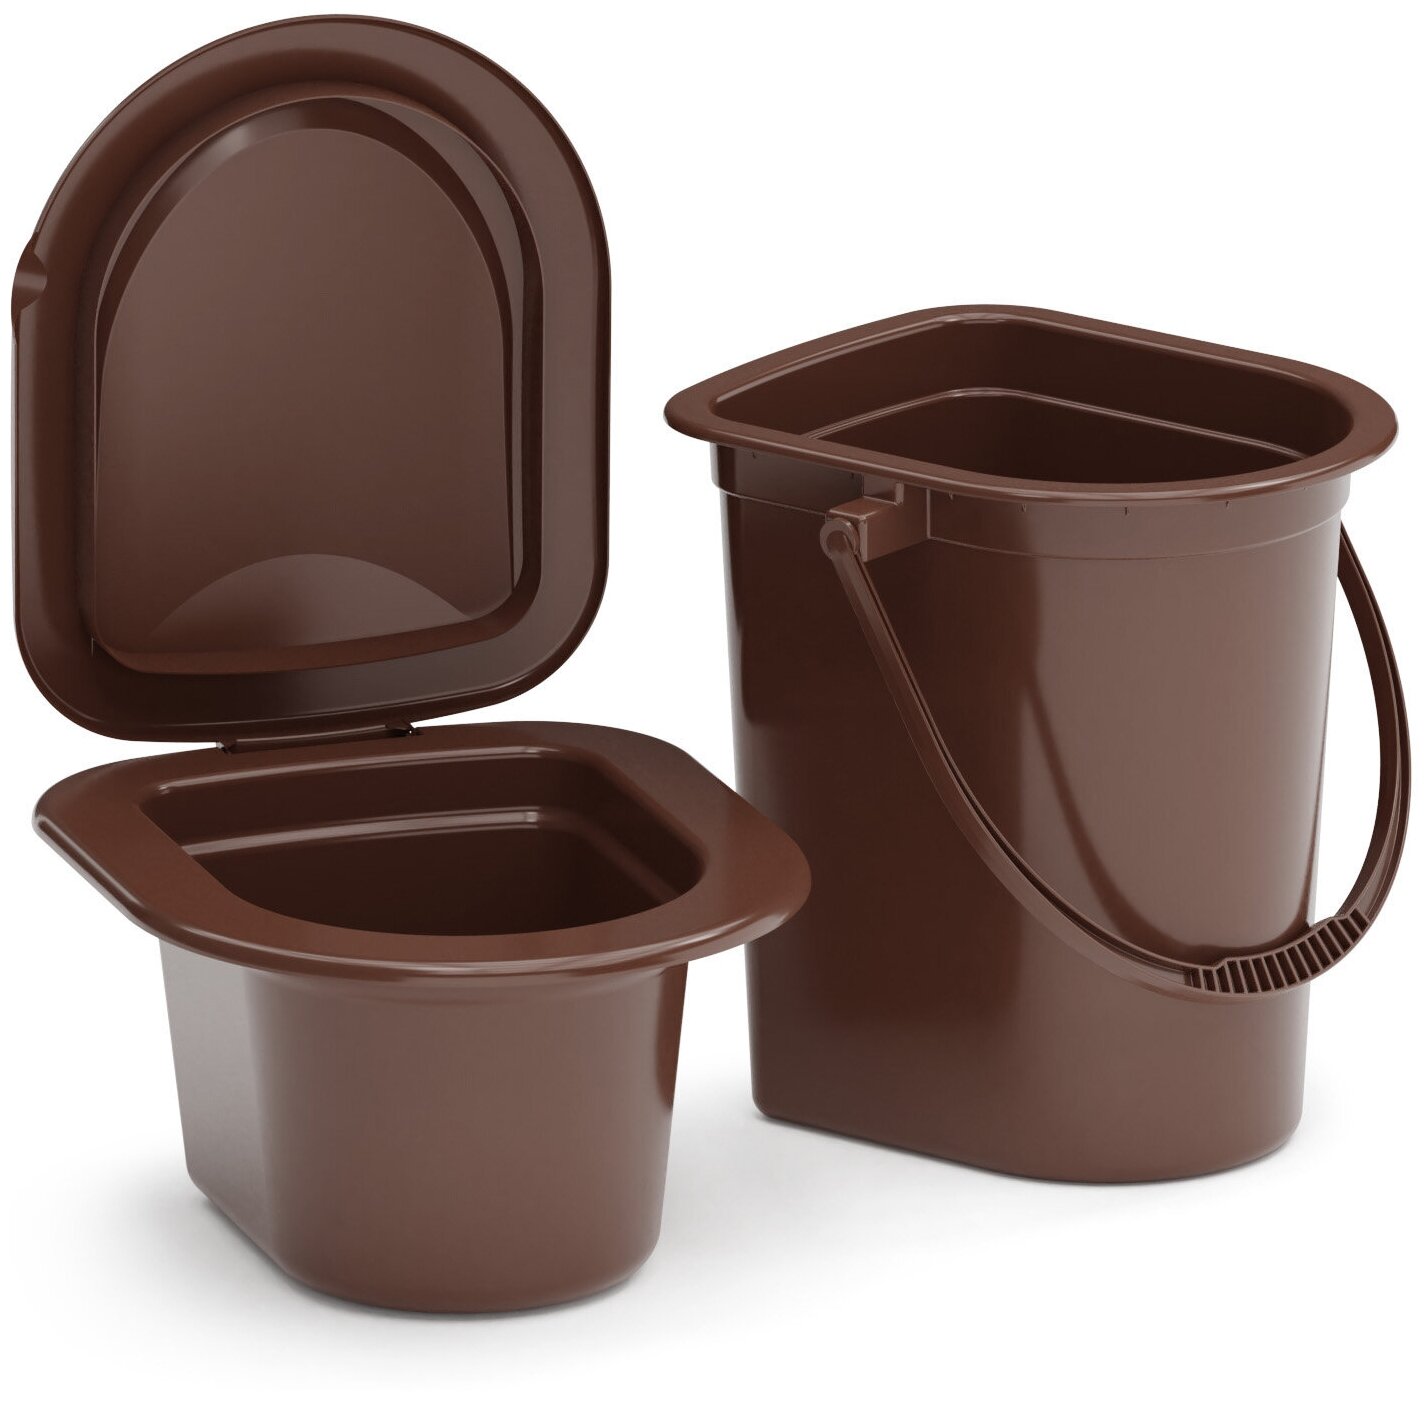 Хозяйственное ведро-туалет со съемным горшком 17л, Альтернатива М3051 (цвет коричневый)